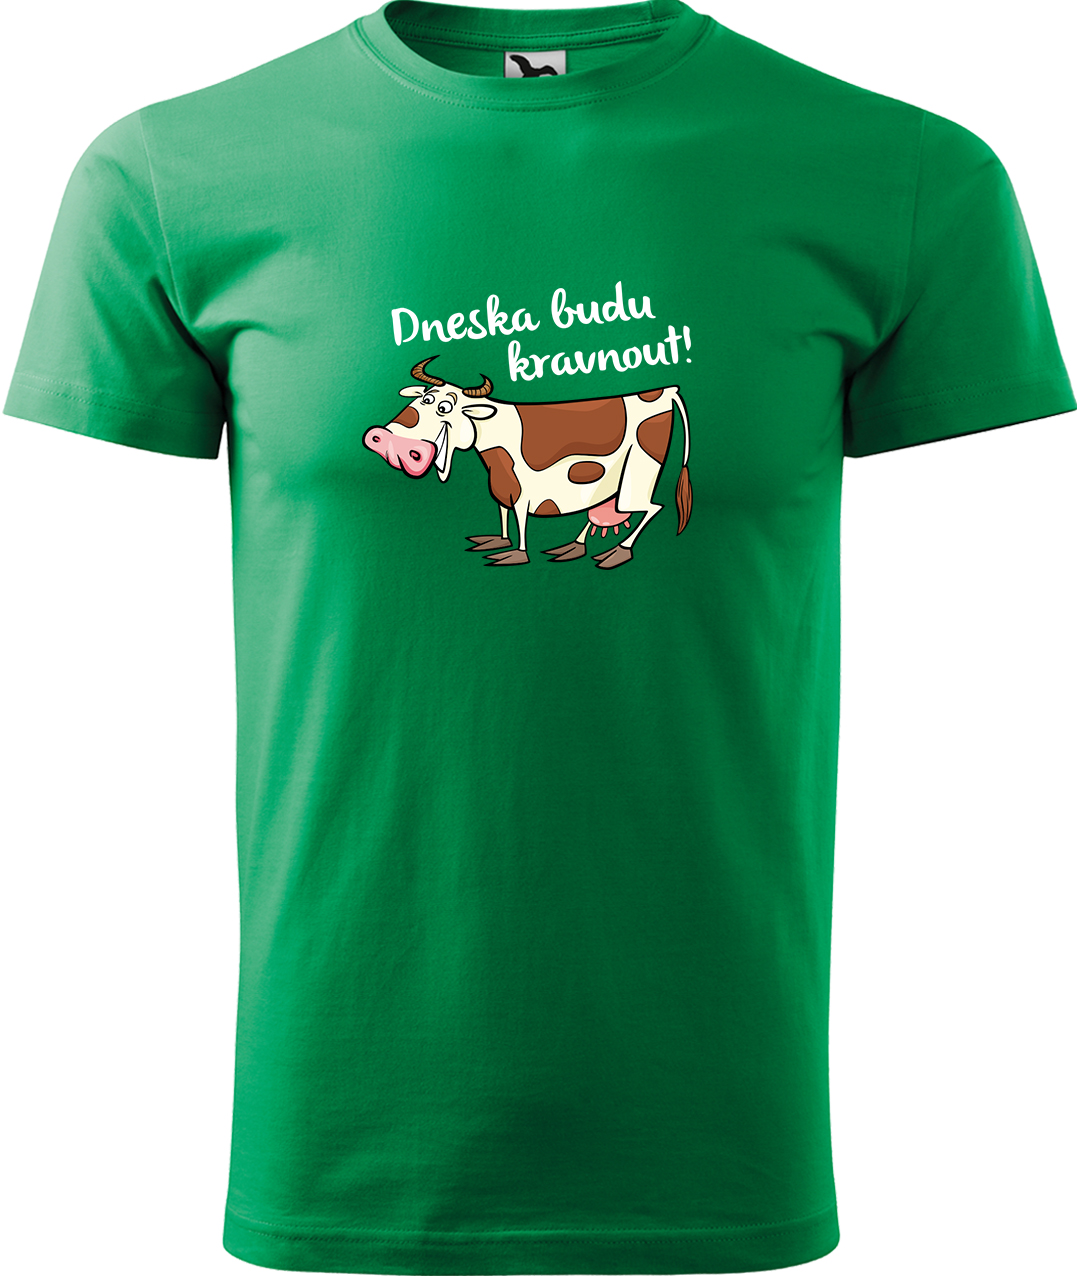 Pánské tričko s krávou - Dneska budu kravnout! Velikost: M, Barva: Středně zelená (16), Střih: pánský